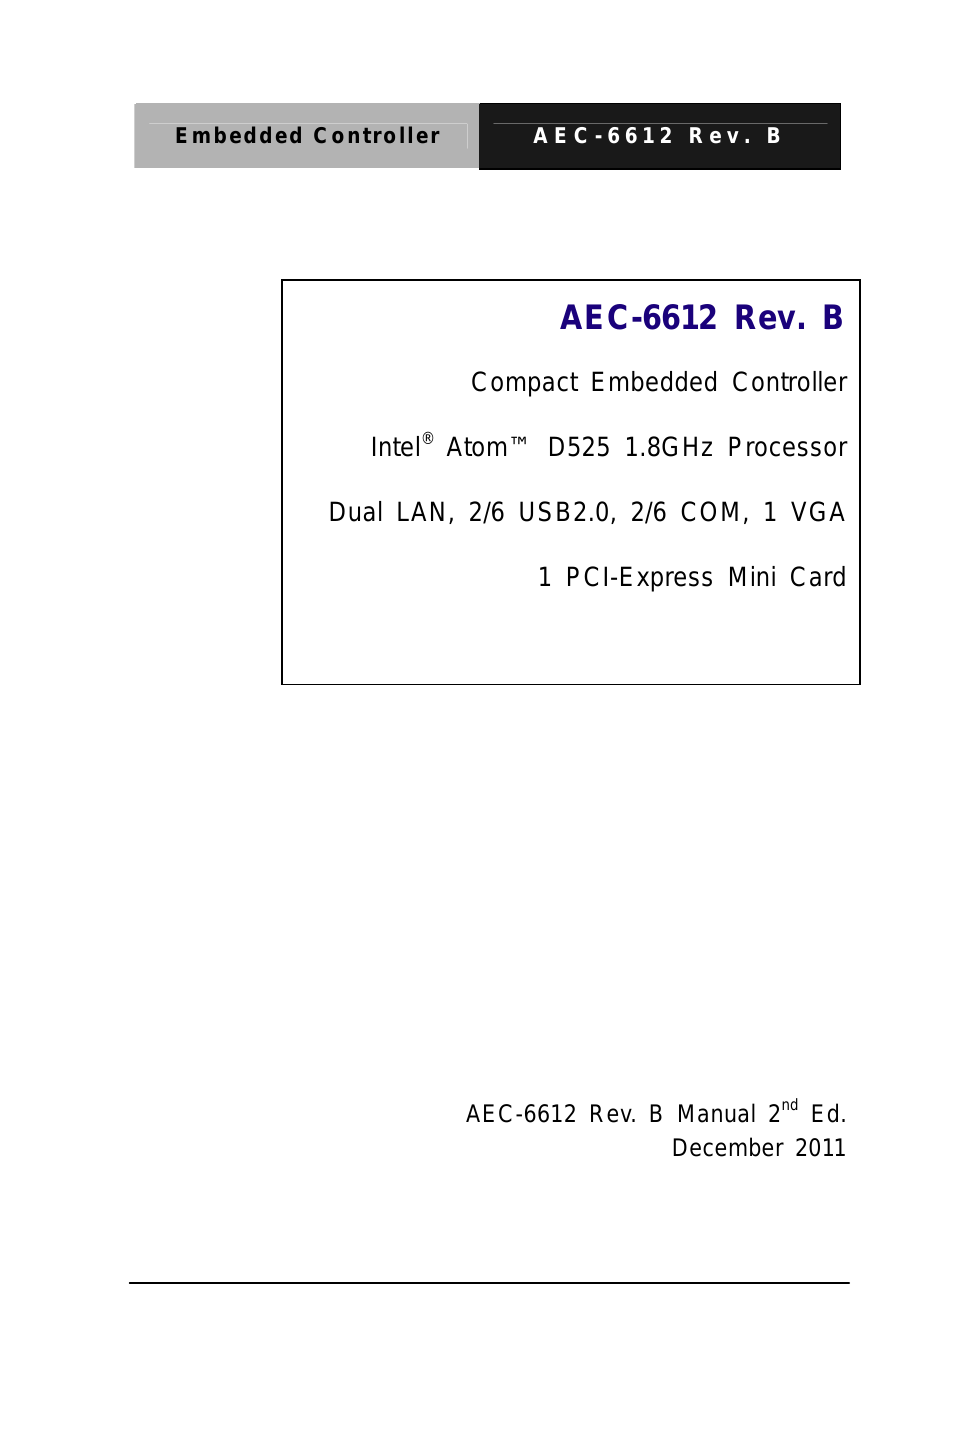 AEC-6612 Rev.B